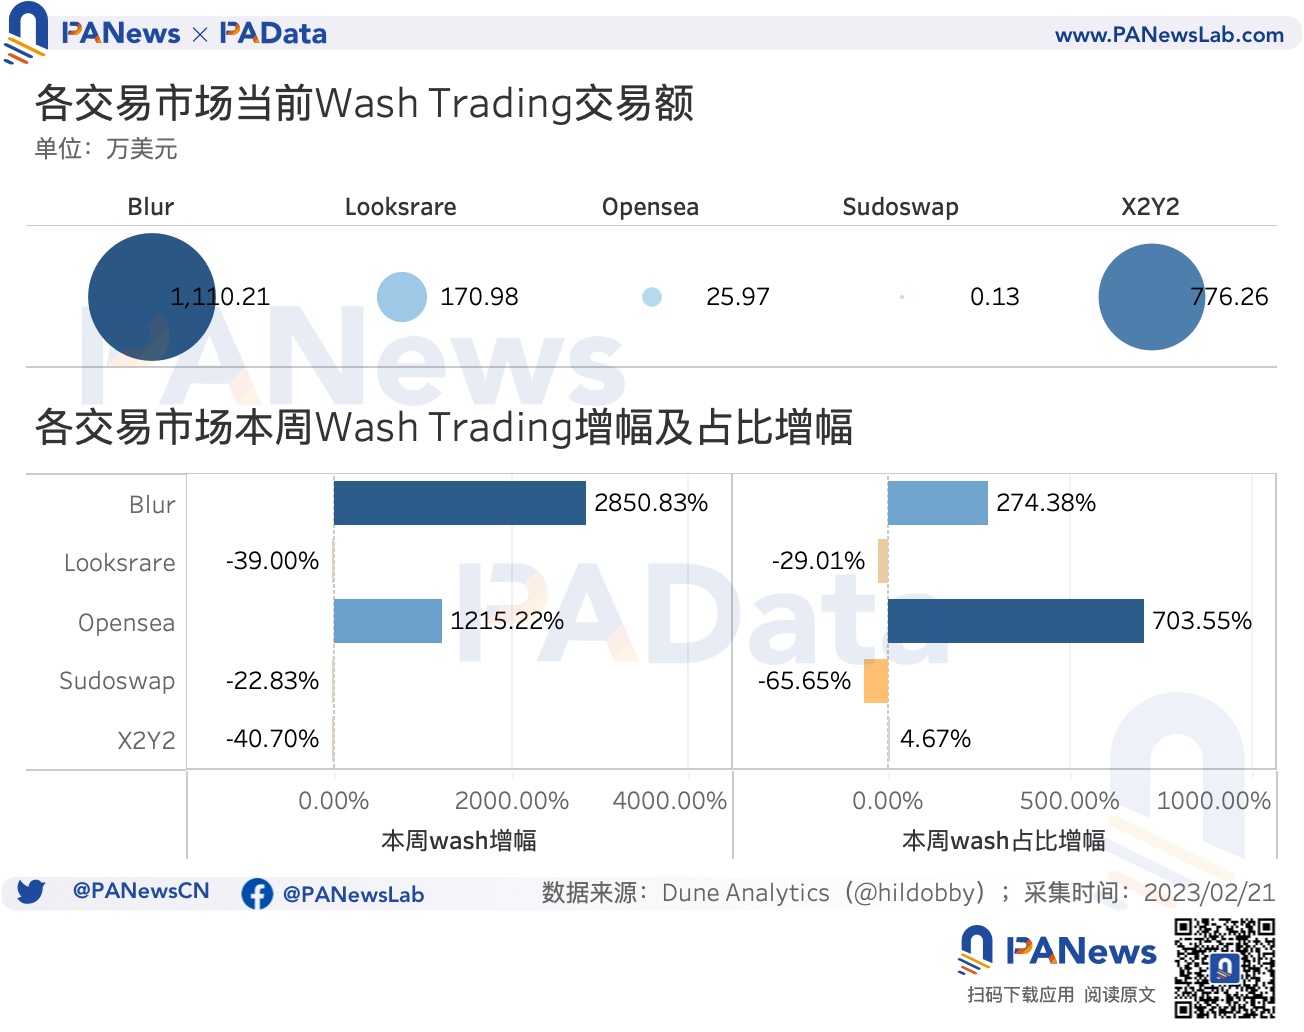 数据透析Blur交易大战：地板价较Opensea低5%，高积分用户当前预估营收为负